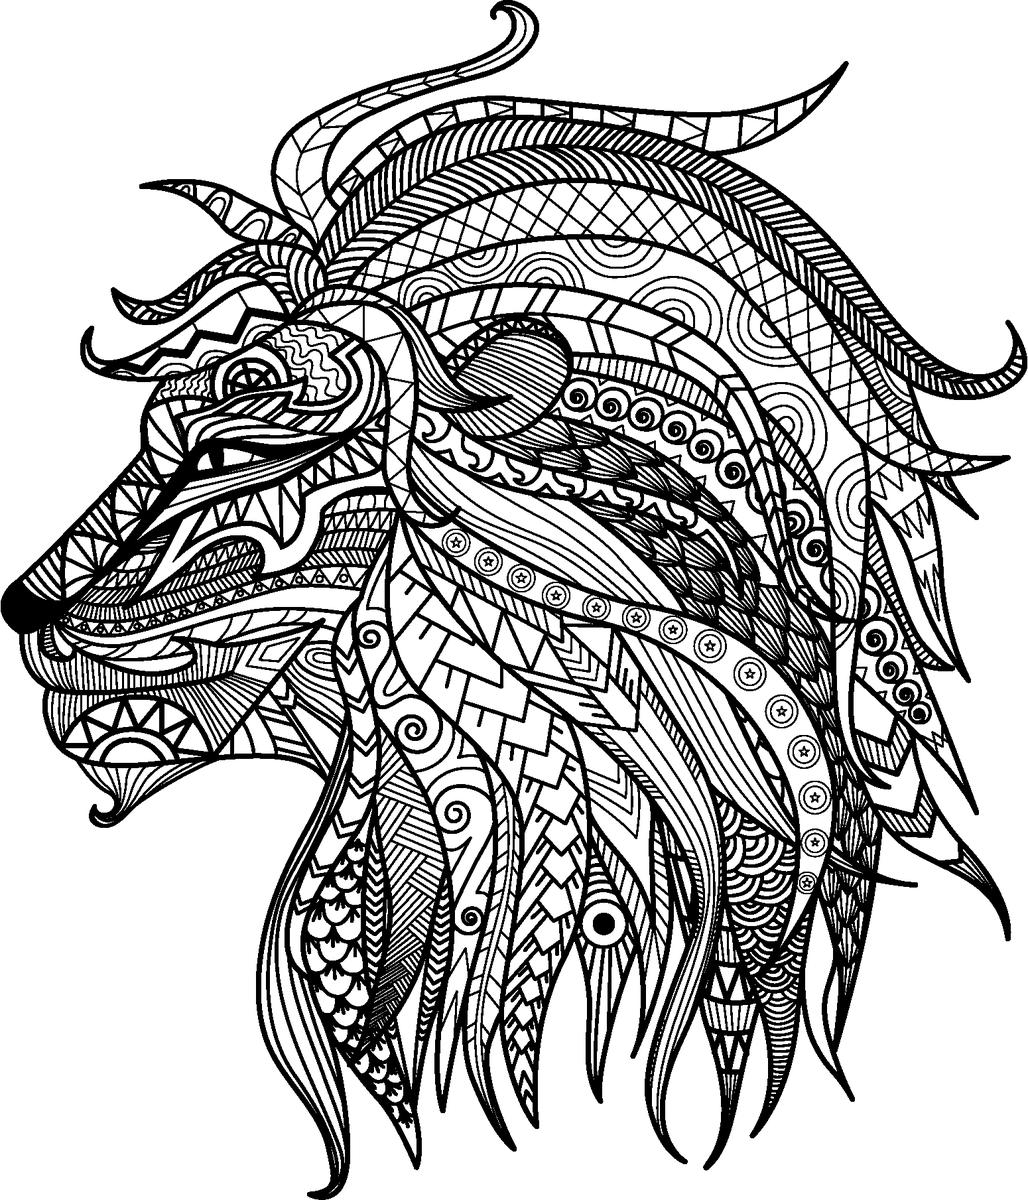 Dibujo de león para colorear